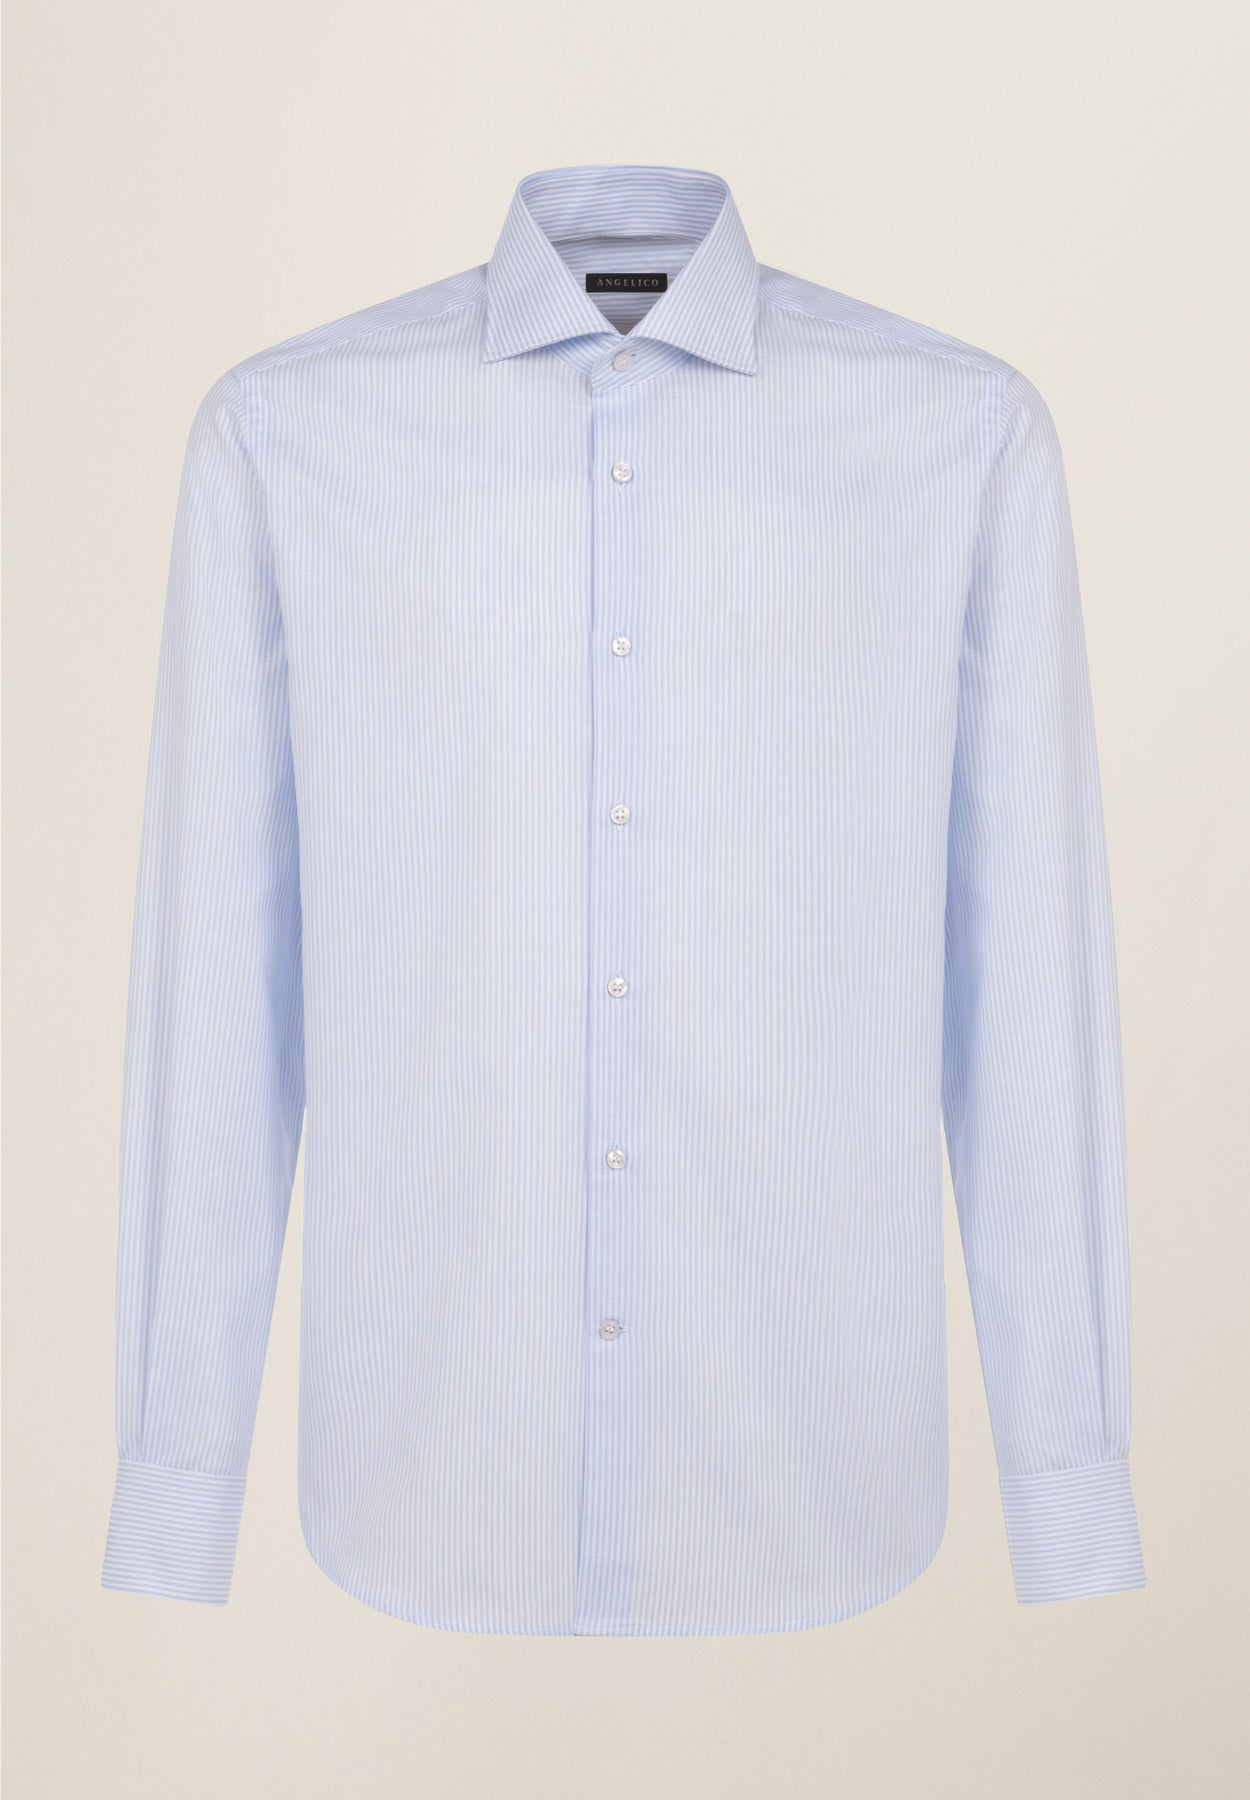 Hellblau-weiß gestreiftes Baumwollhemd mit normaler Passform